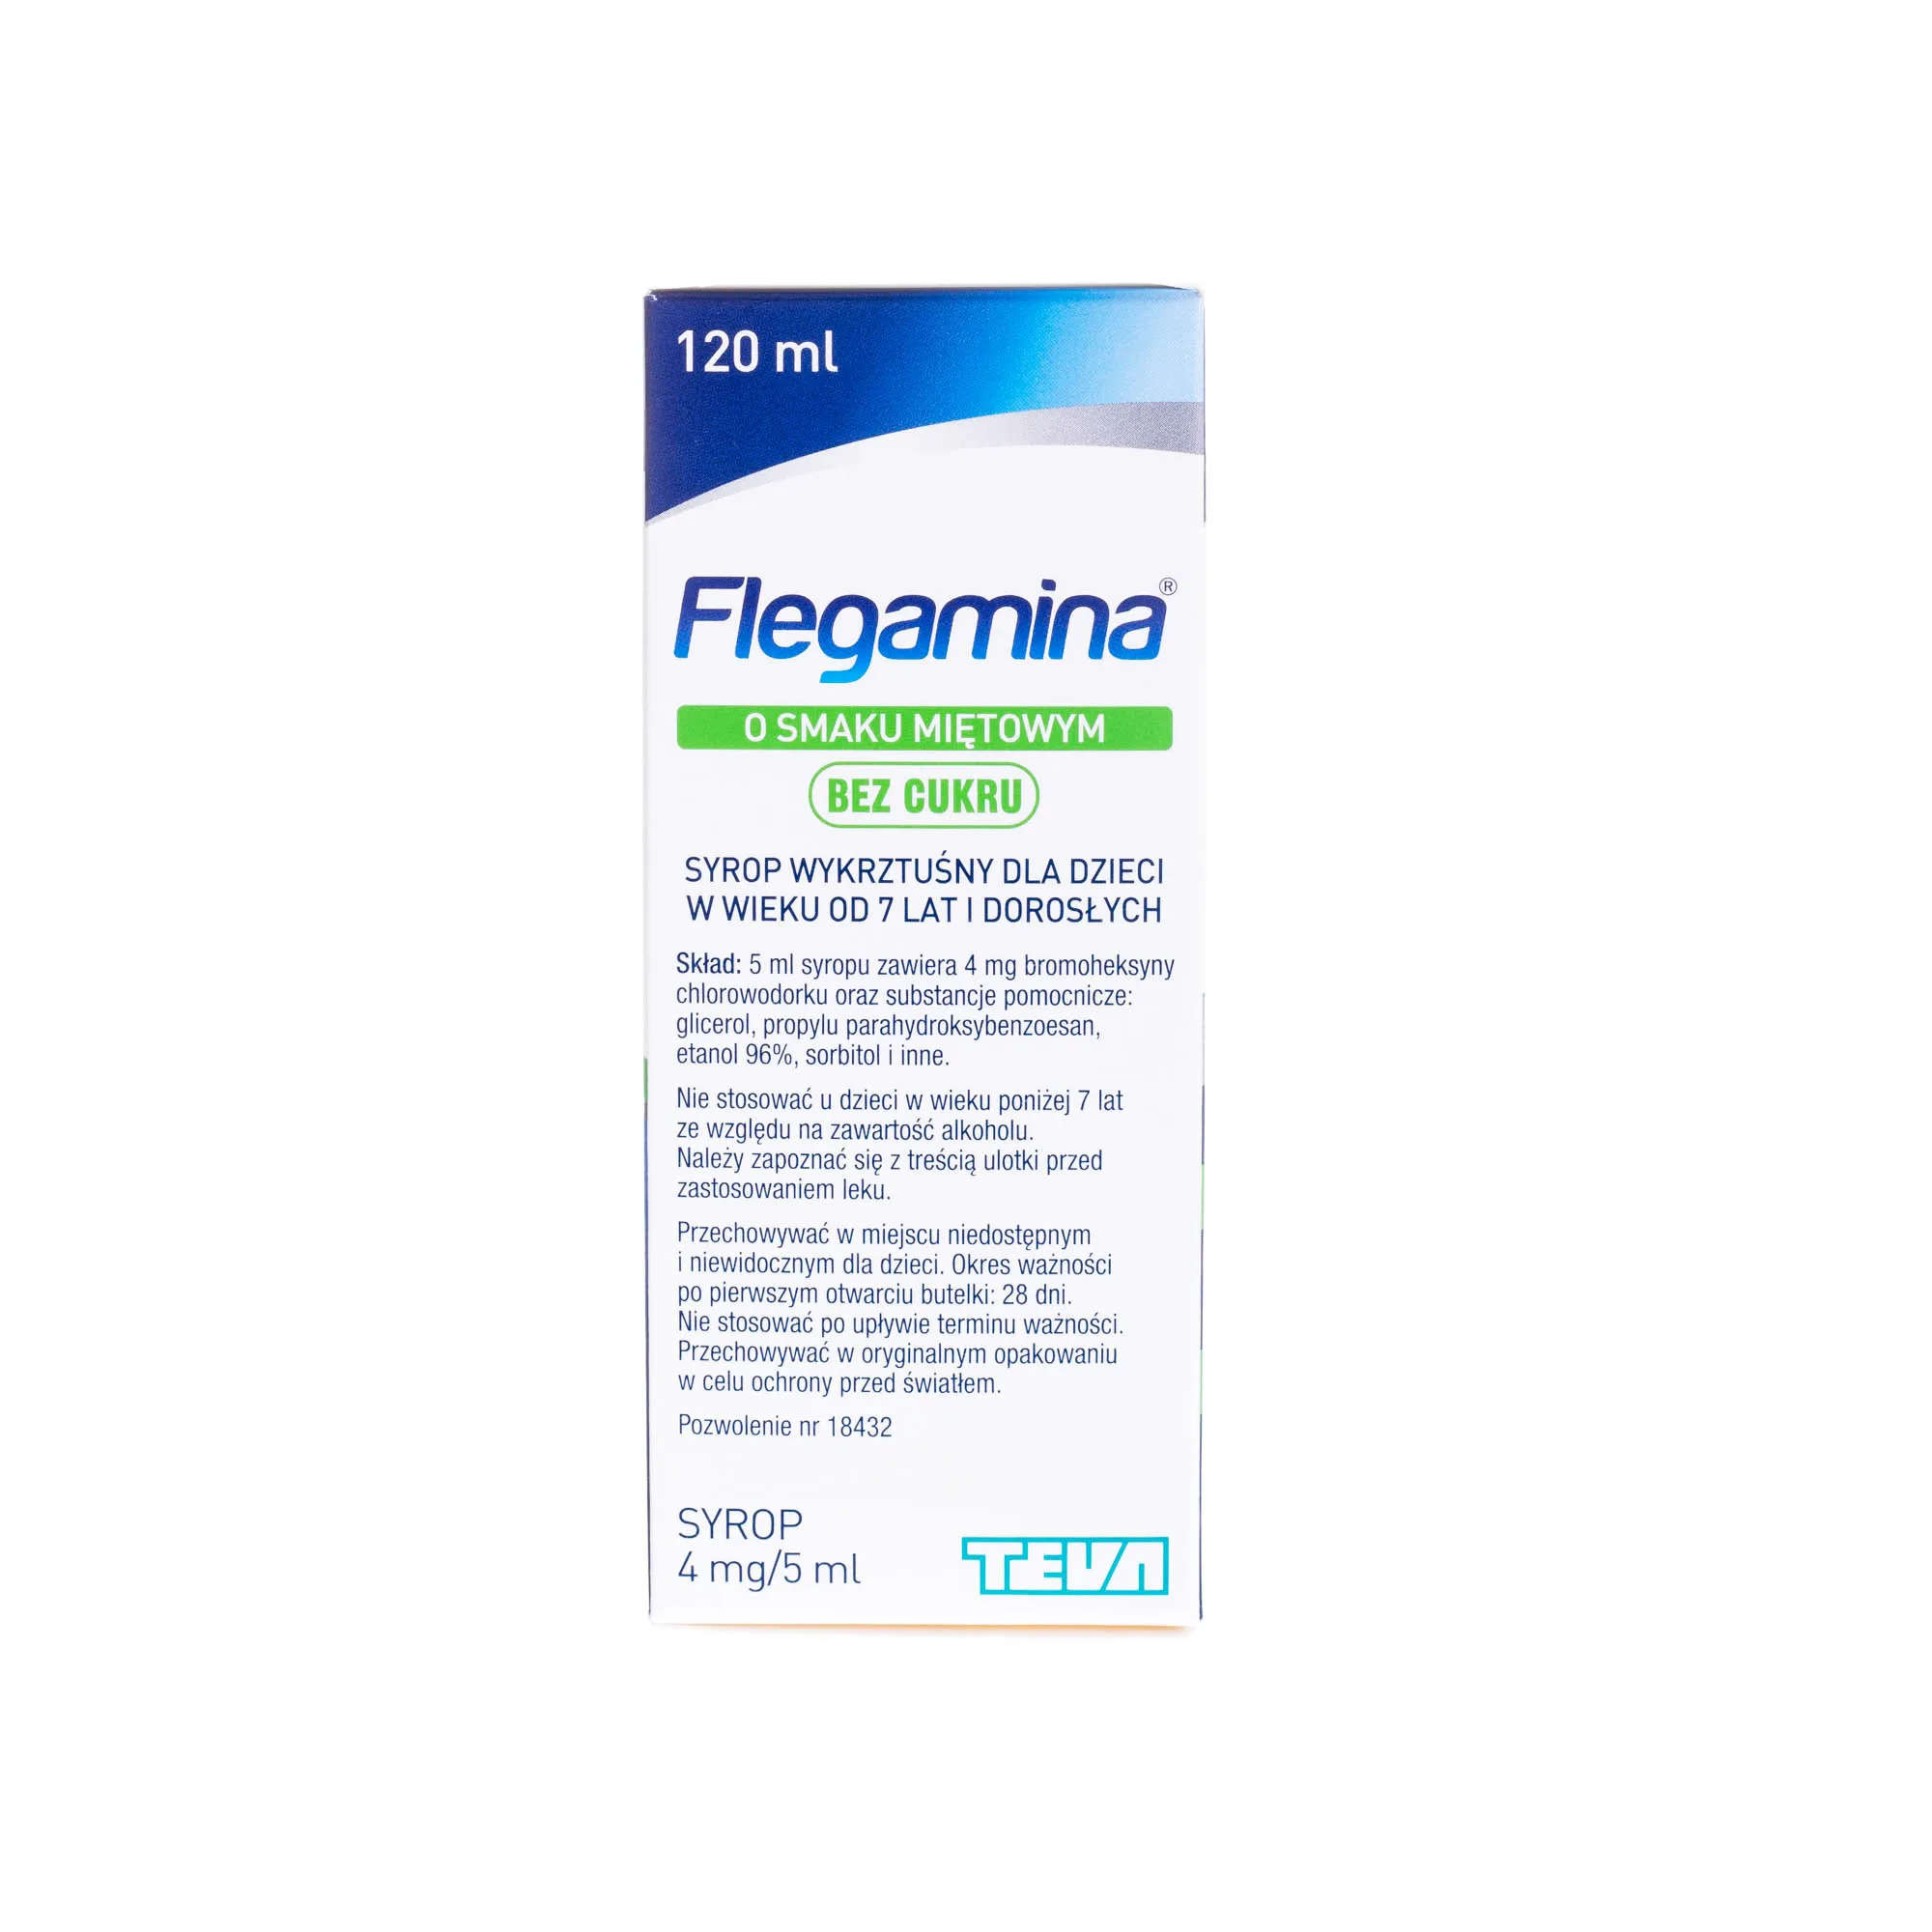 Flegamina, o smaku miętowym bez cuktru Bromhexini hydrochloridum 4 mg/ 5 ml syrop, 120 ml 